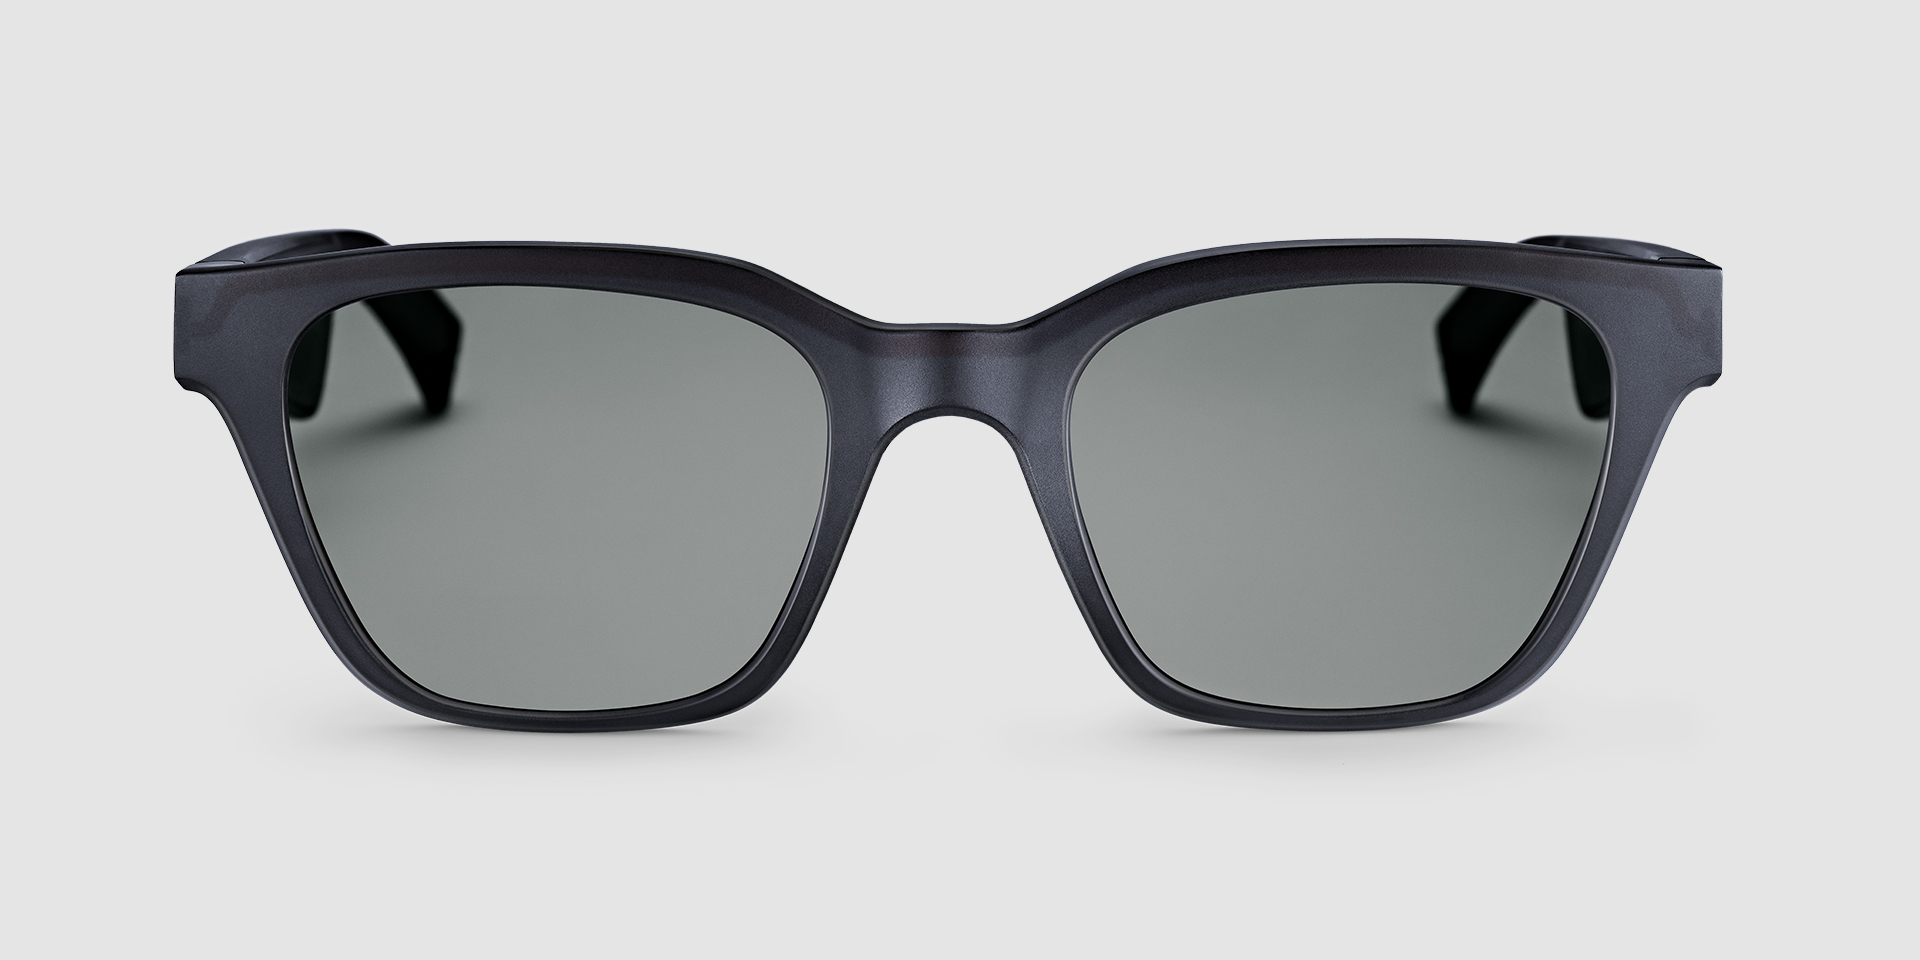 Acefrog Lenti di ricambio polarizzate rivestite AR spessore 1,4 mm per occhiali da sole Bose Tenor 